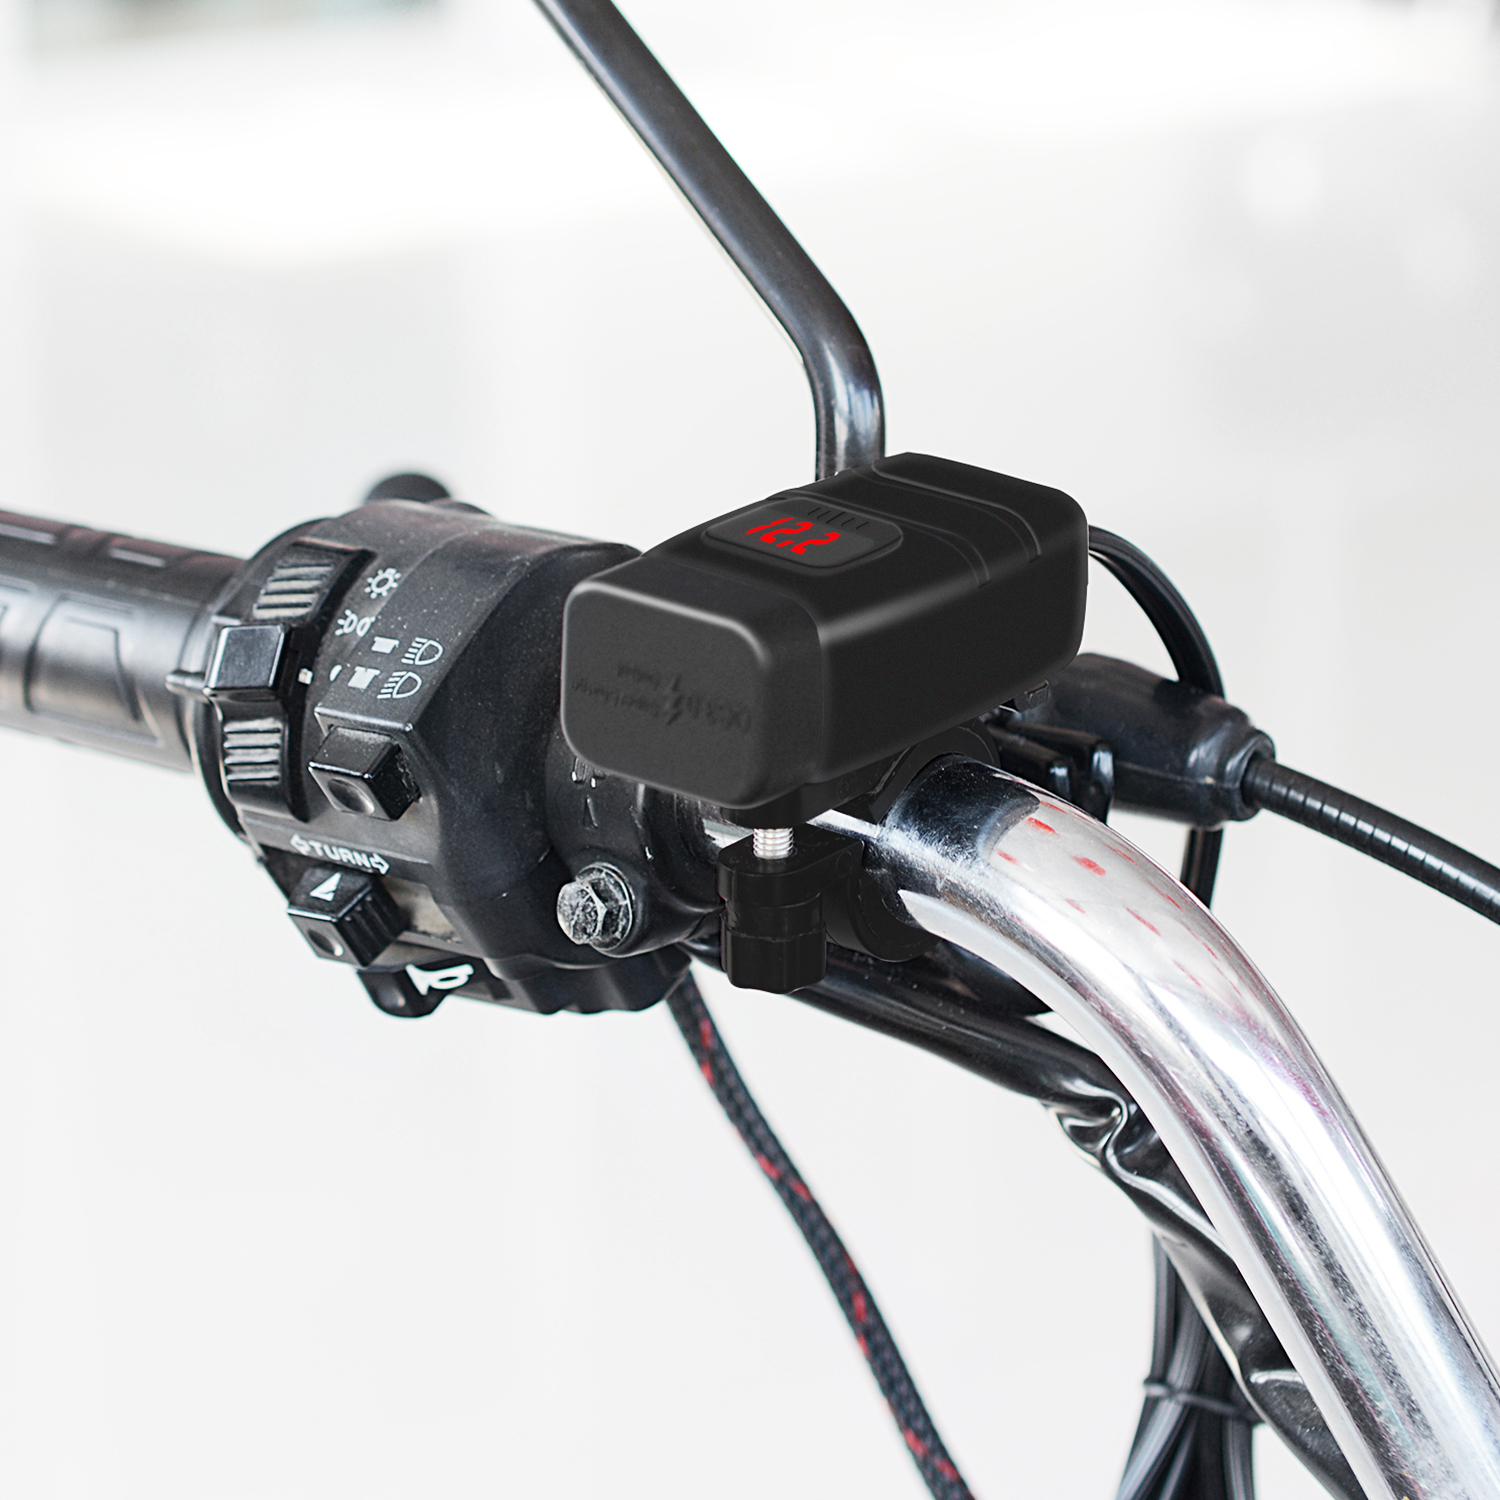 12V/24V QC3.0 Waterproof Motorcycle Dual Usb Charger LED Volt Meter Voltmetersocket